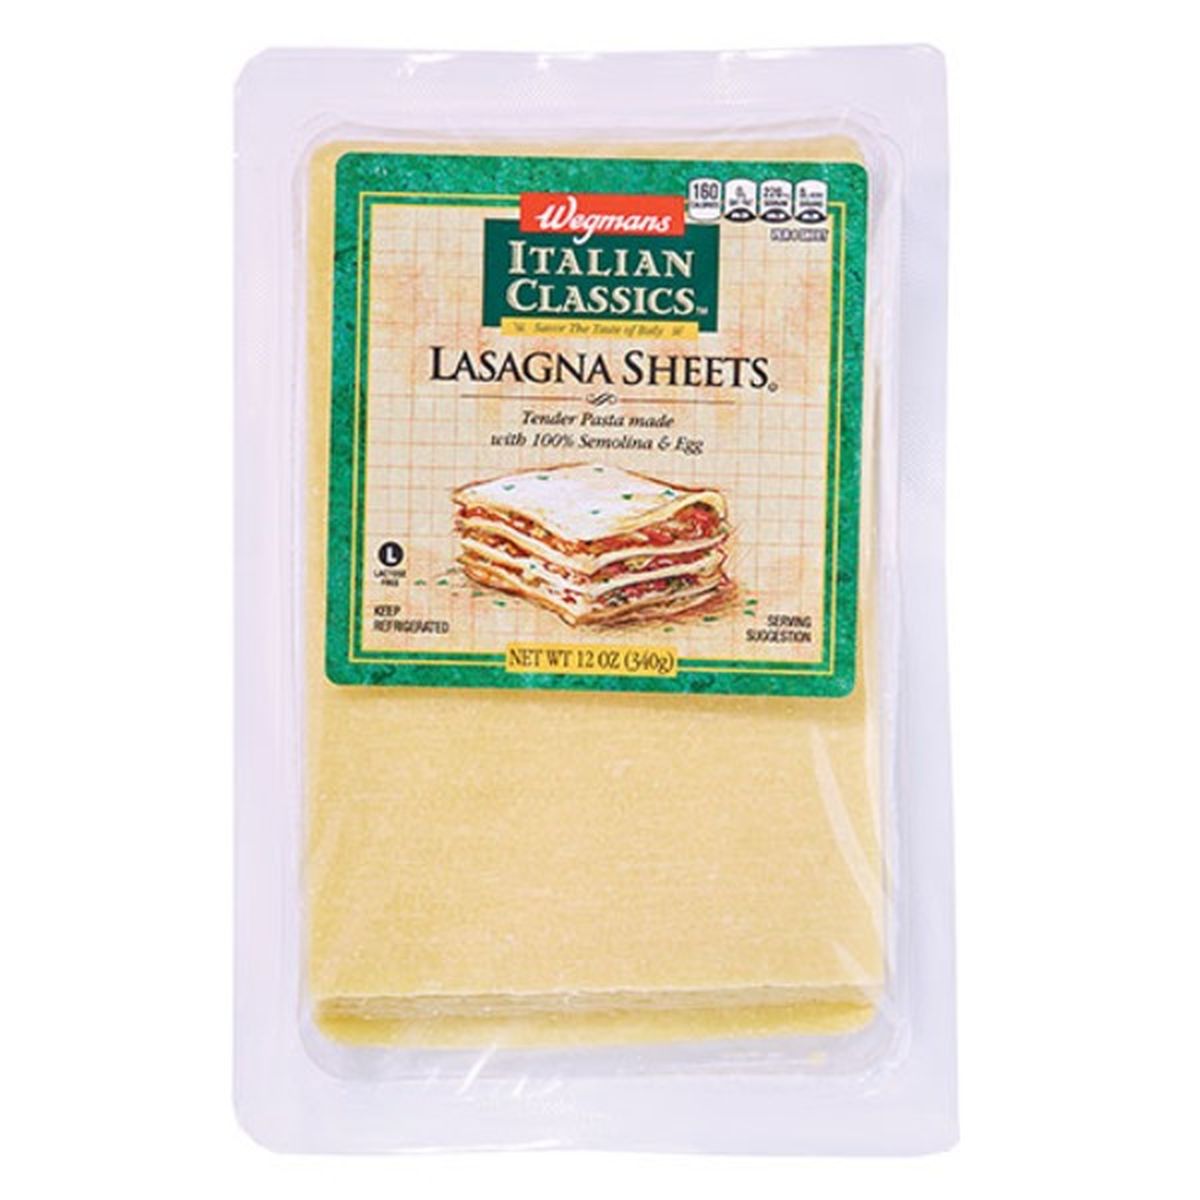 Calories in Wegmans Italian Classics Lasagna Sheets